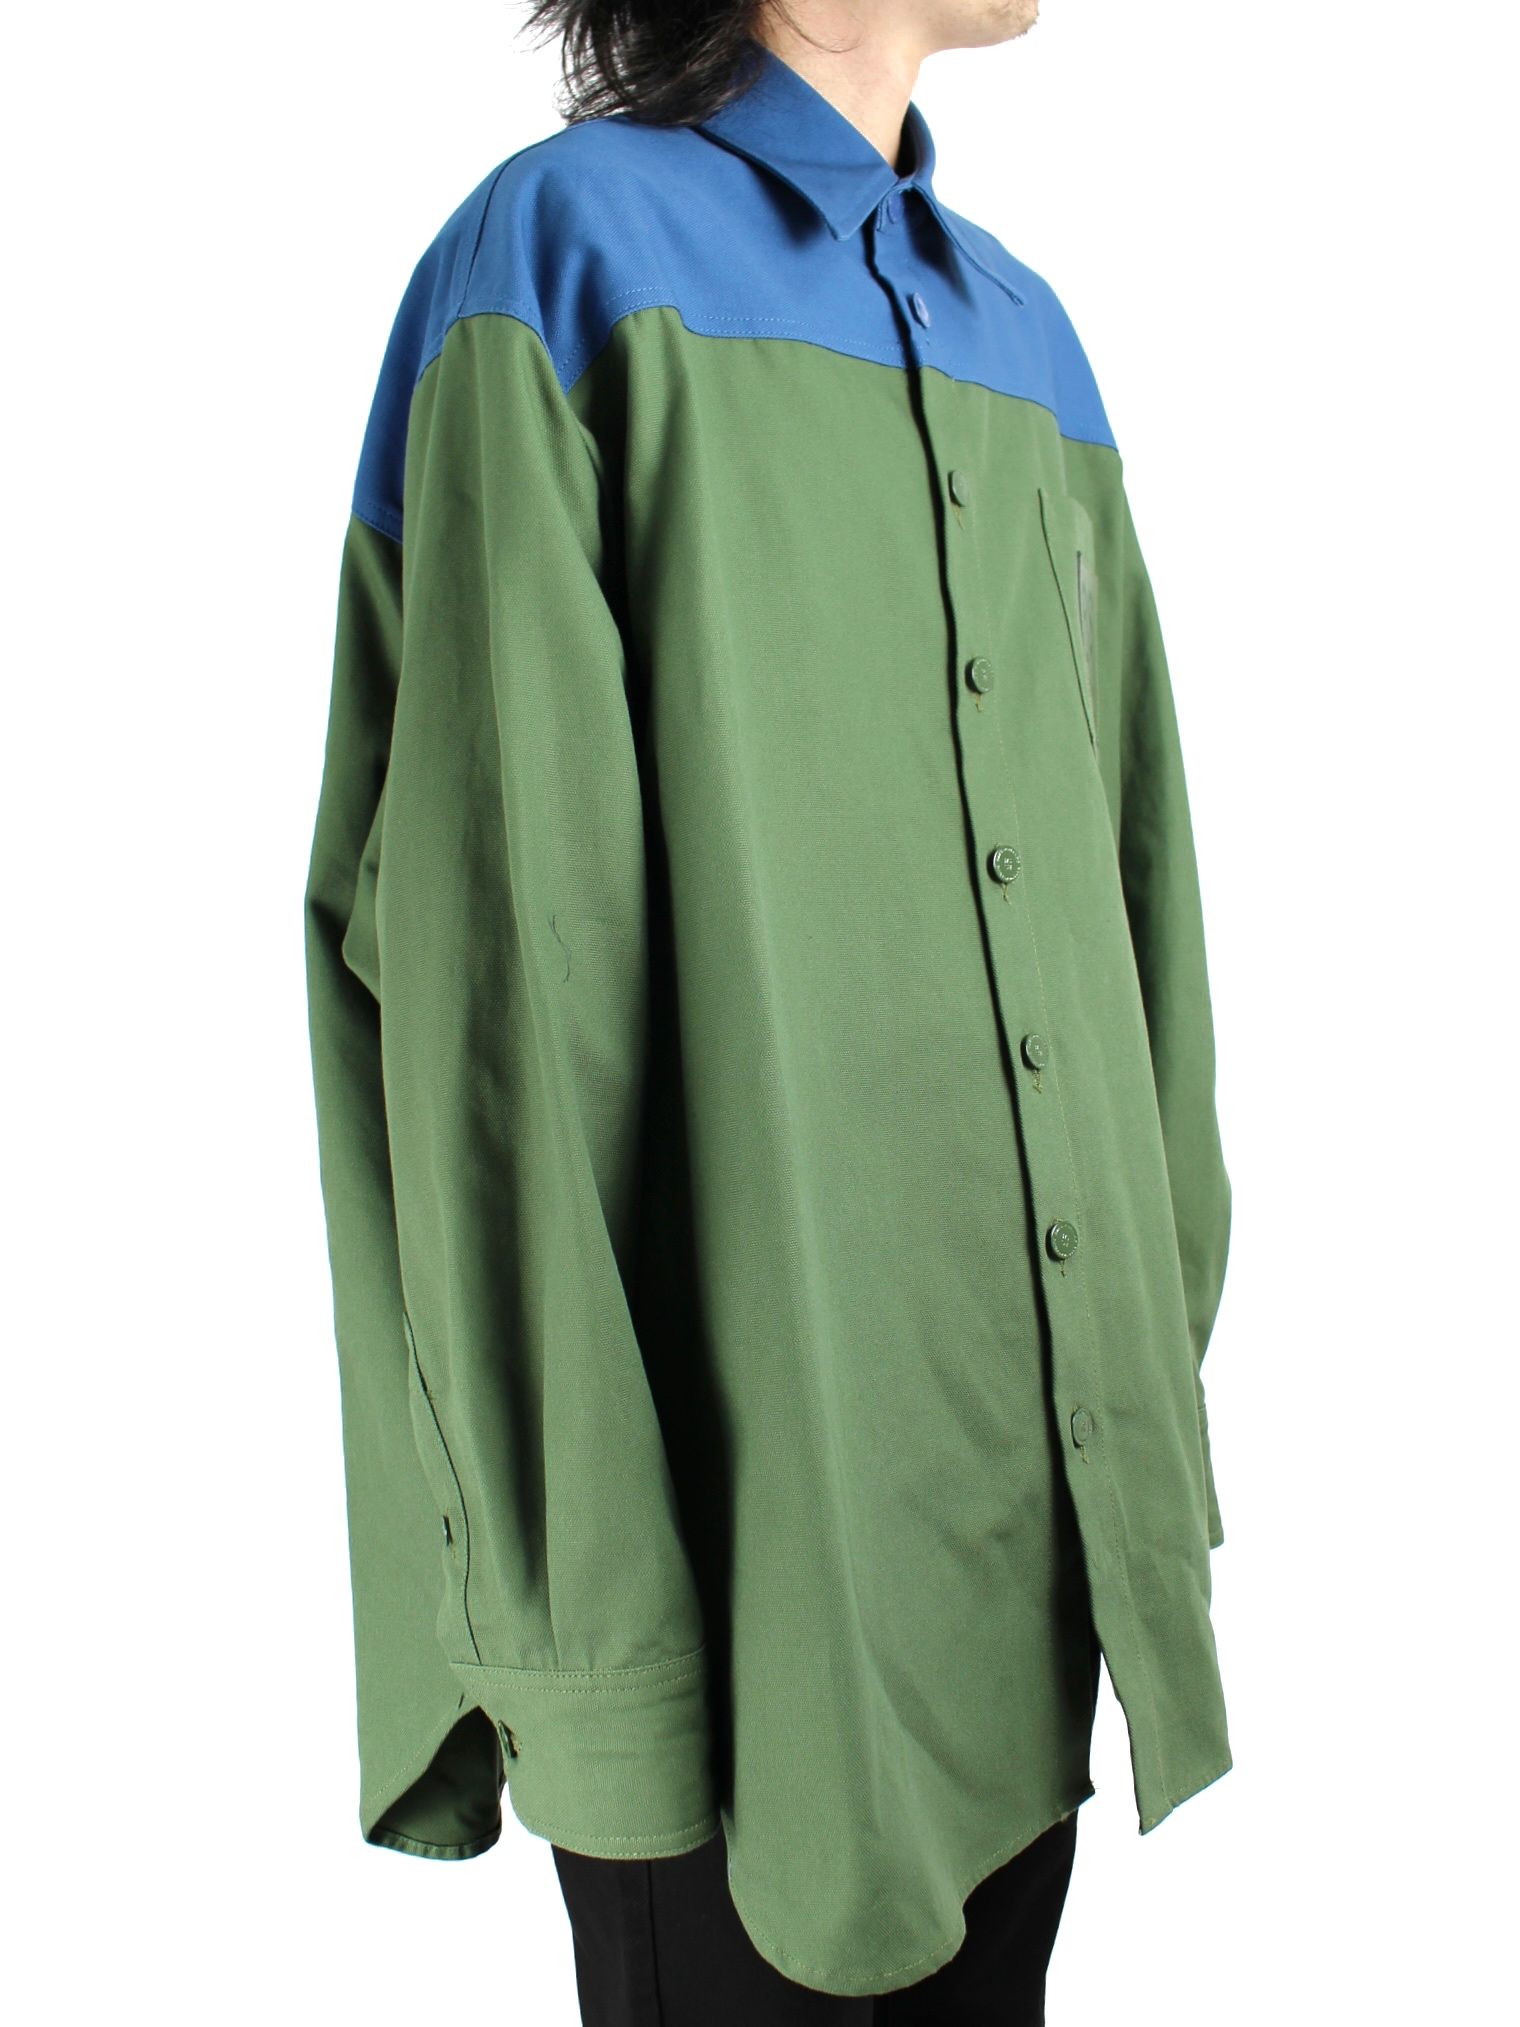 【22AW】ロゴパッチ Rピン ビッグフィット バイカラーデニムシャツ / Oversized bicolor denim shirt with R  pin in back / カーキ × ブルー - XS - カーキ×ブルー